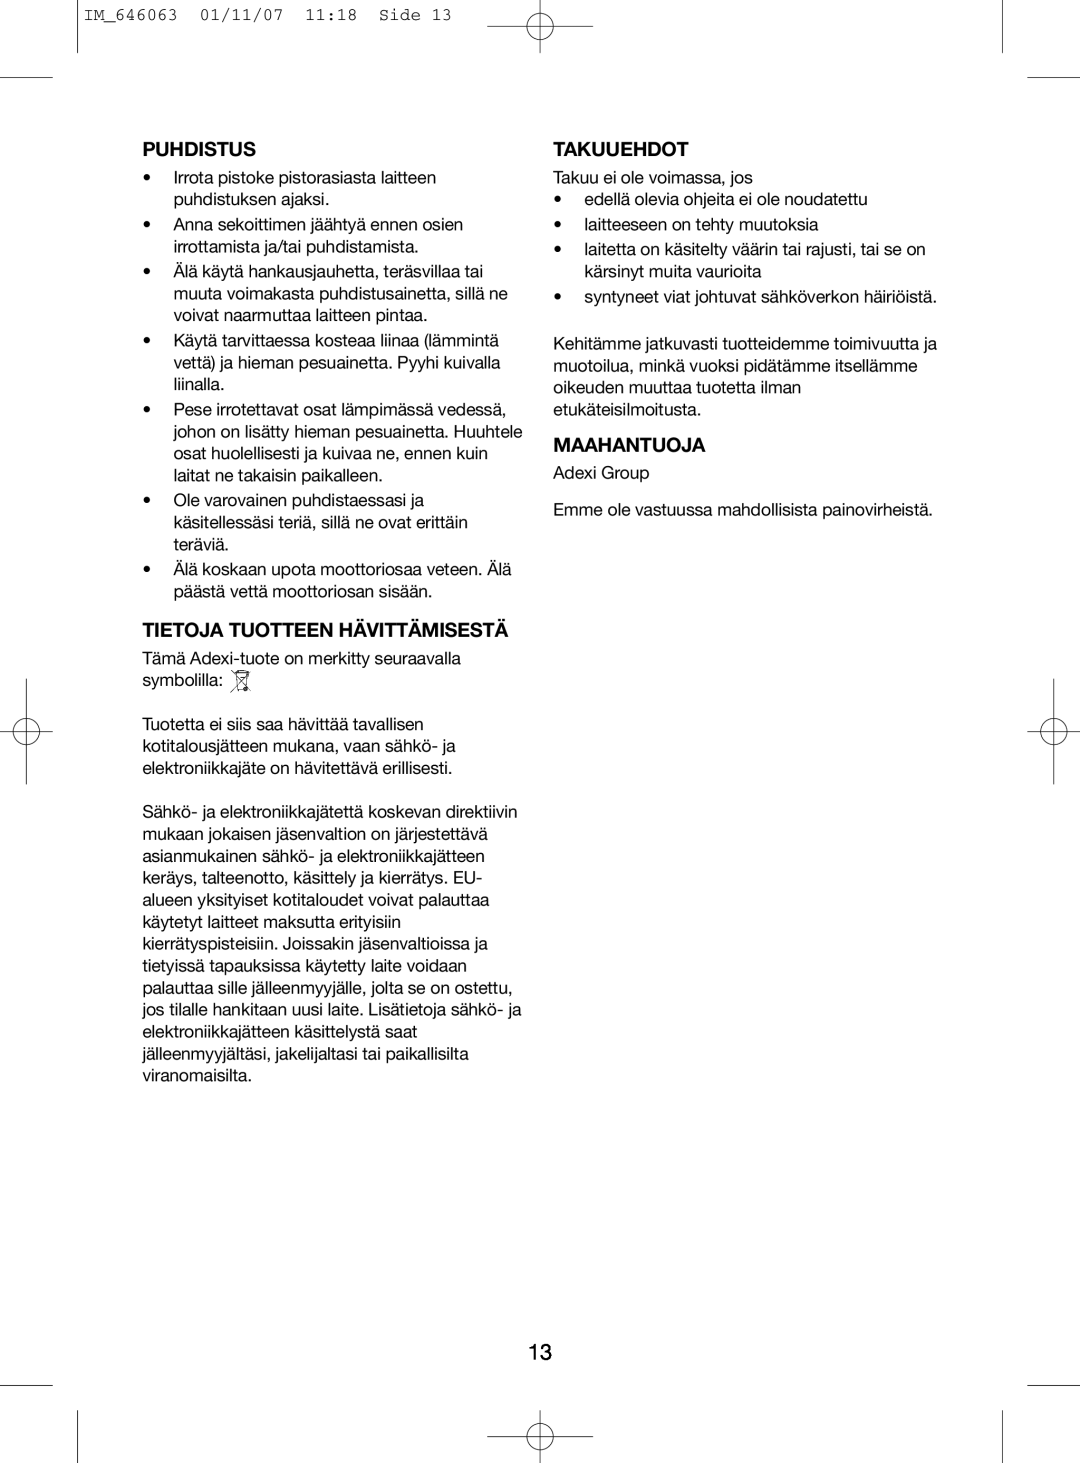 Melissa 646-063 manual Puhdistus, Tietoja Tuotteen Hävittämisestä, Takuuehdot, Maahantuoja, IM646063 01/11/07 1118 Side 